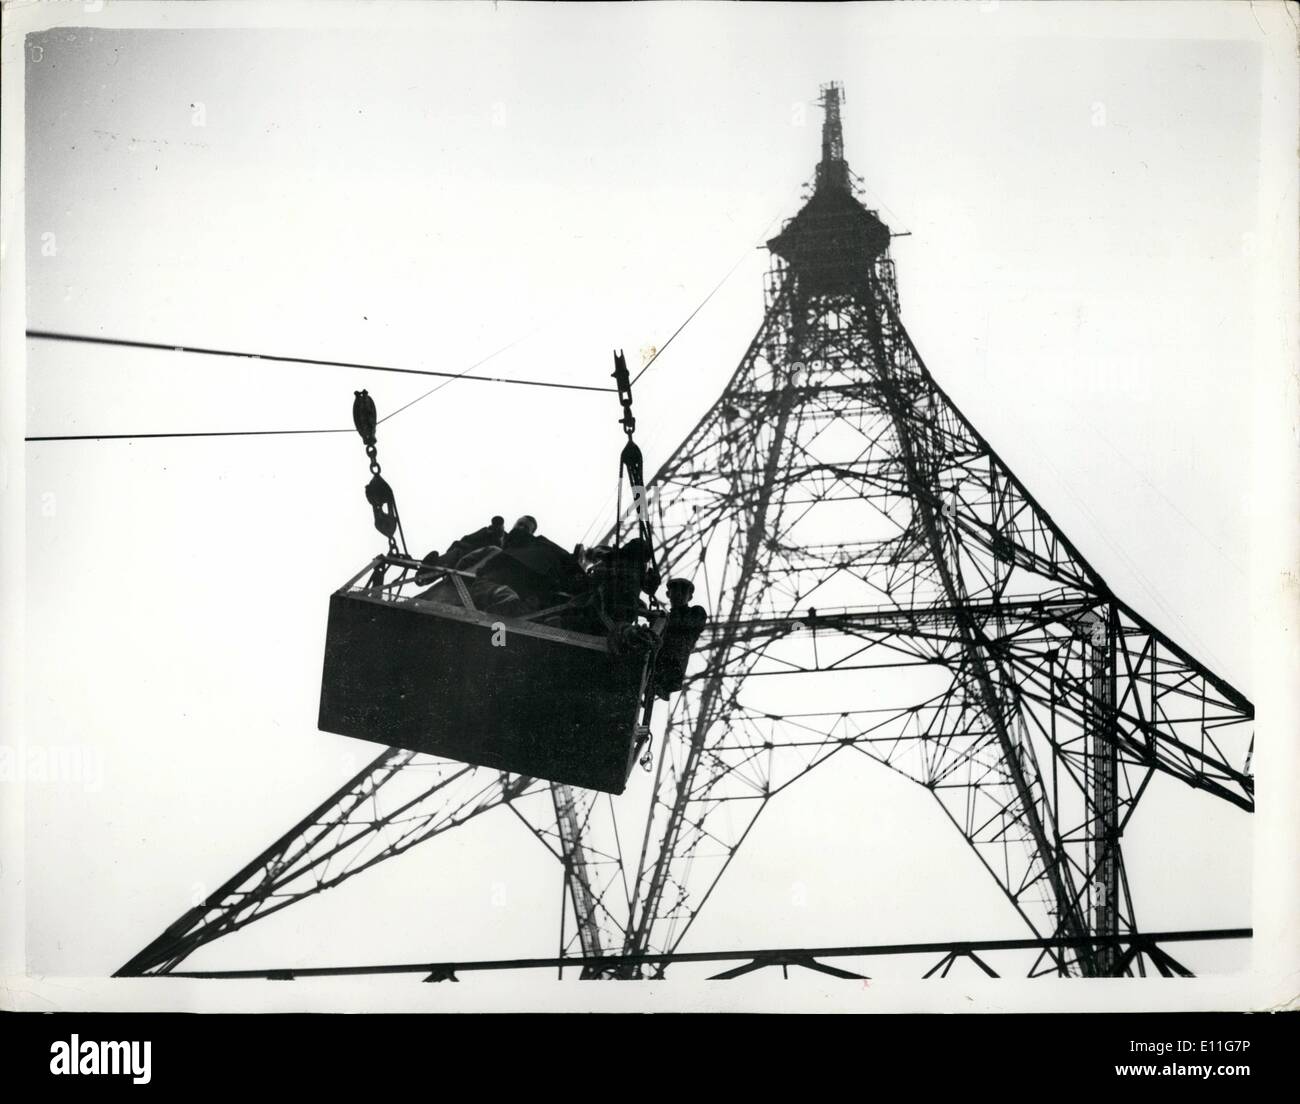 Nov. 11, 1977 - Prova il nuovo B.B.C. La televisione il montante con l'ausilio di razzi - presso il palazzo di cristallo: il nuovo B.B.C. Montante della televisione - che è 700ft. alta - ha subito una prova aerodinamica oggi - quando una batteria di dieci razzi montati sulla torre a un'altezza di 625m sopra il livello del suolo - e fuoco sequenza din.. I razzi erano una attrezzatura - e quando sparò - ognuno ha creato una spinta di una mezza tonnellata.. Qualsiasi movimento della torre essendo registrata su apparecchiature di elettroni in un laboratorio mobile Foto Stock